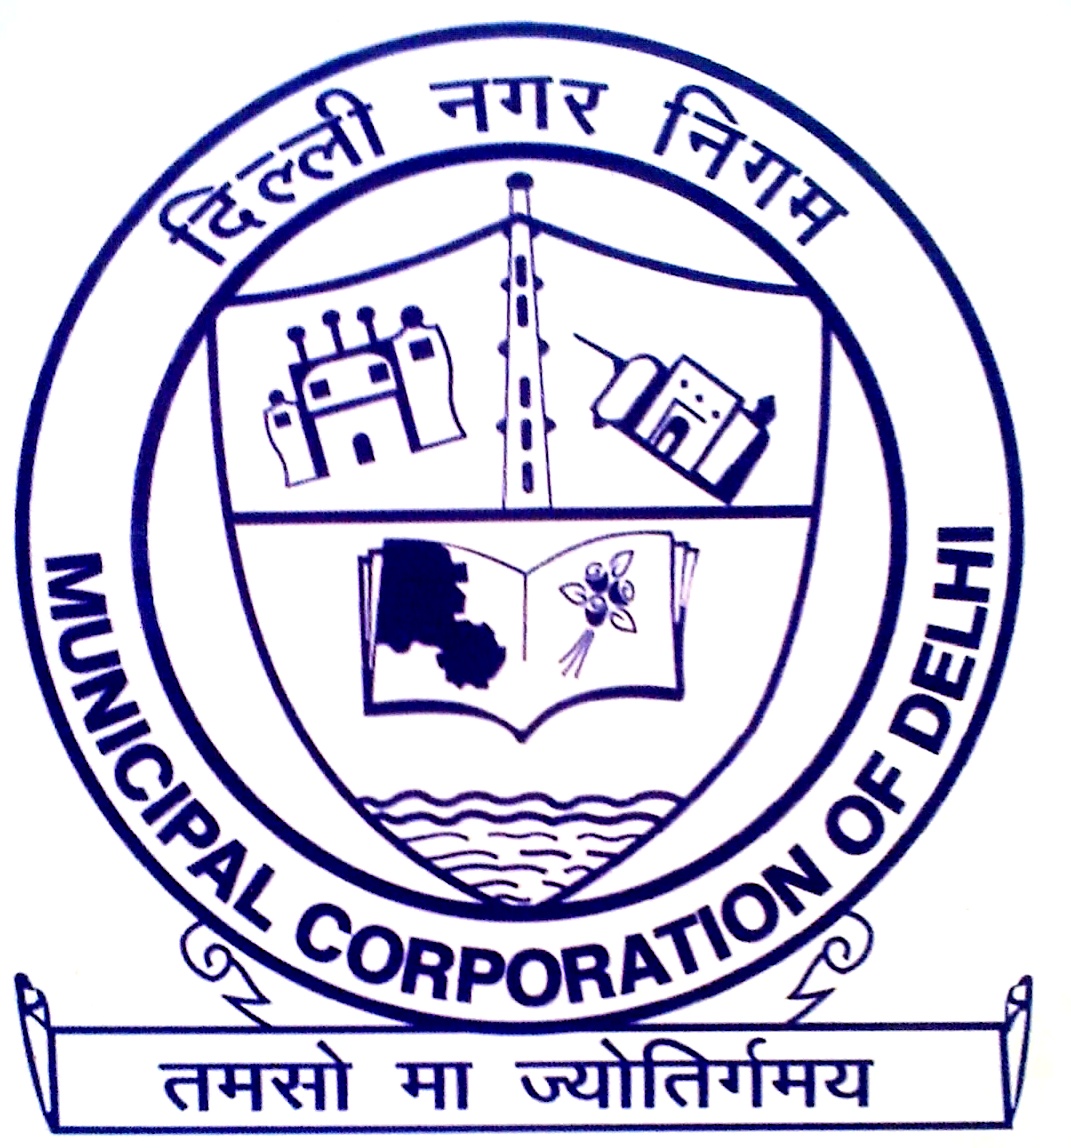 vedpal Municipal Corporation of Delhi Delhi MCD Merge: दिल्ली की तीनों नगर निगमों का हुआ एकीकरण, राष्ट्रपति ने दी विधेयक को मंजूरी